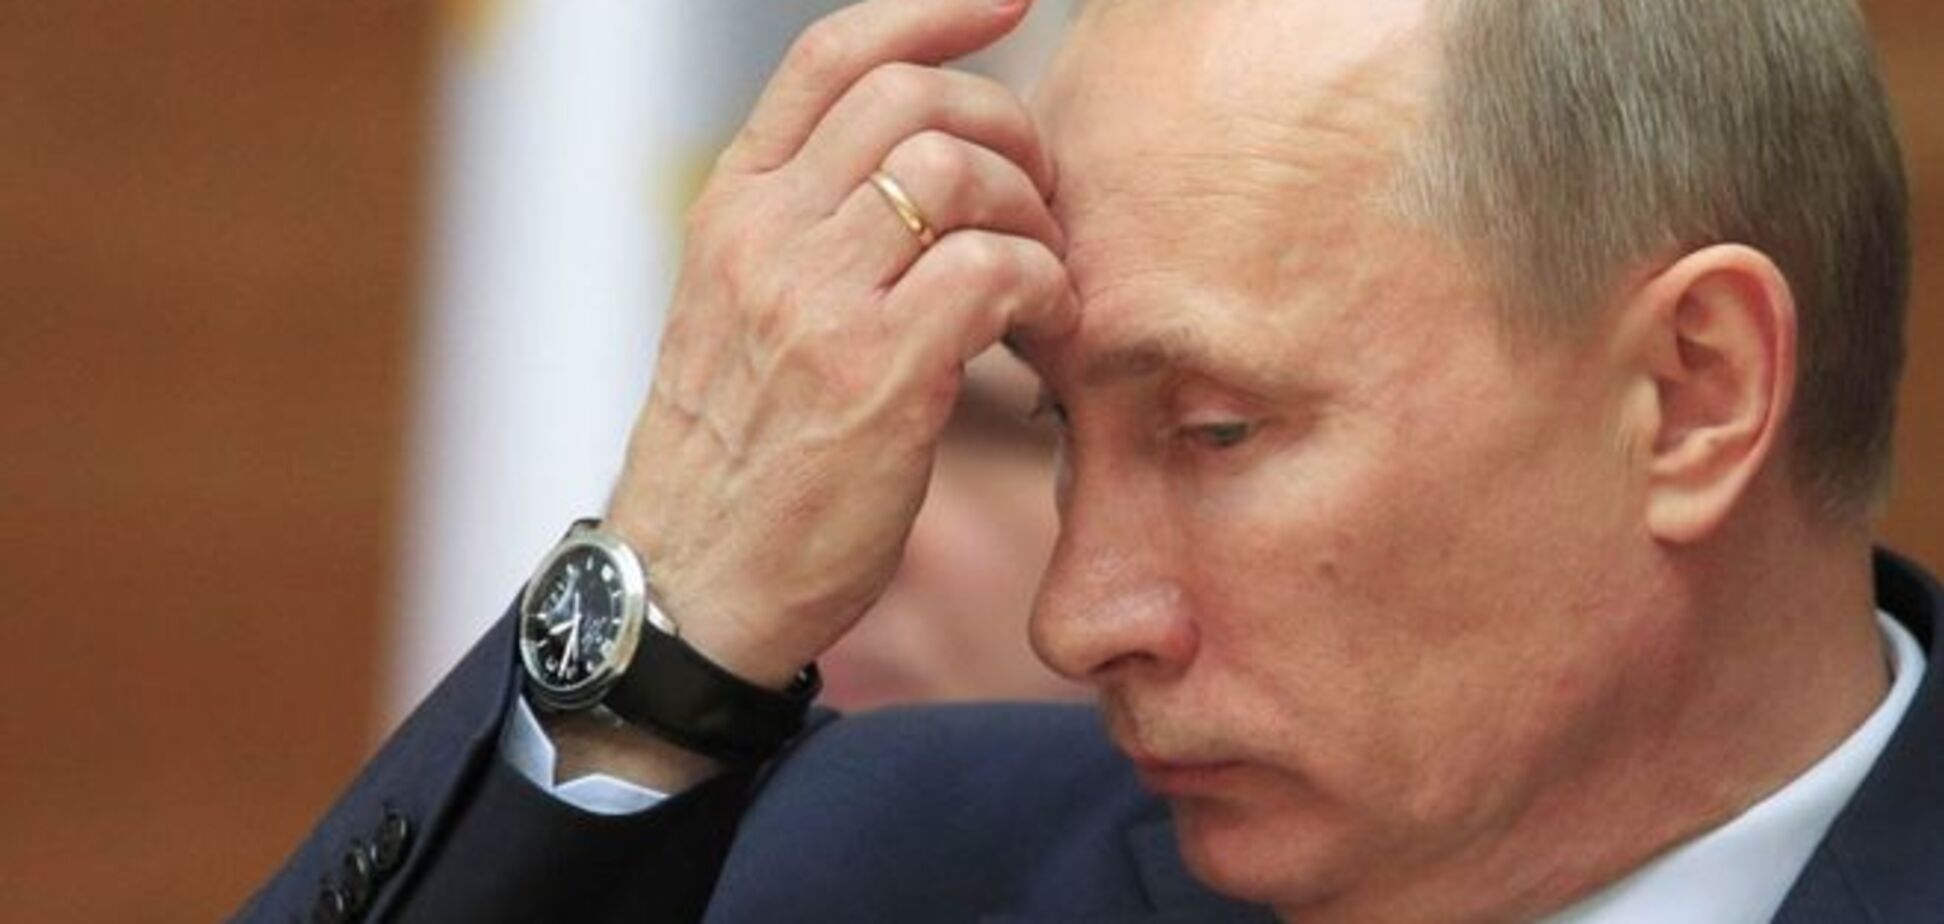 Публицист рассказал о комплексах Путина: обиженный и униженный